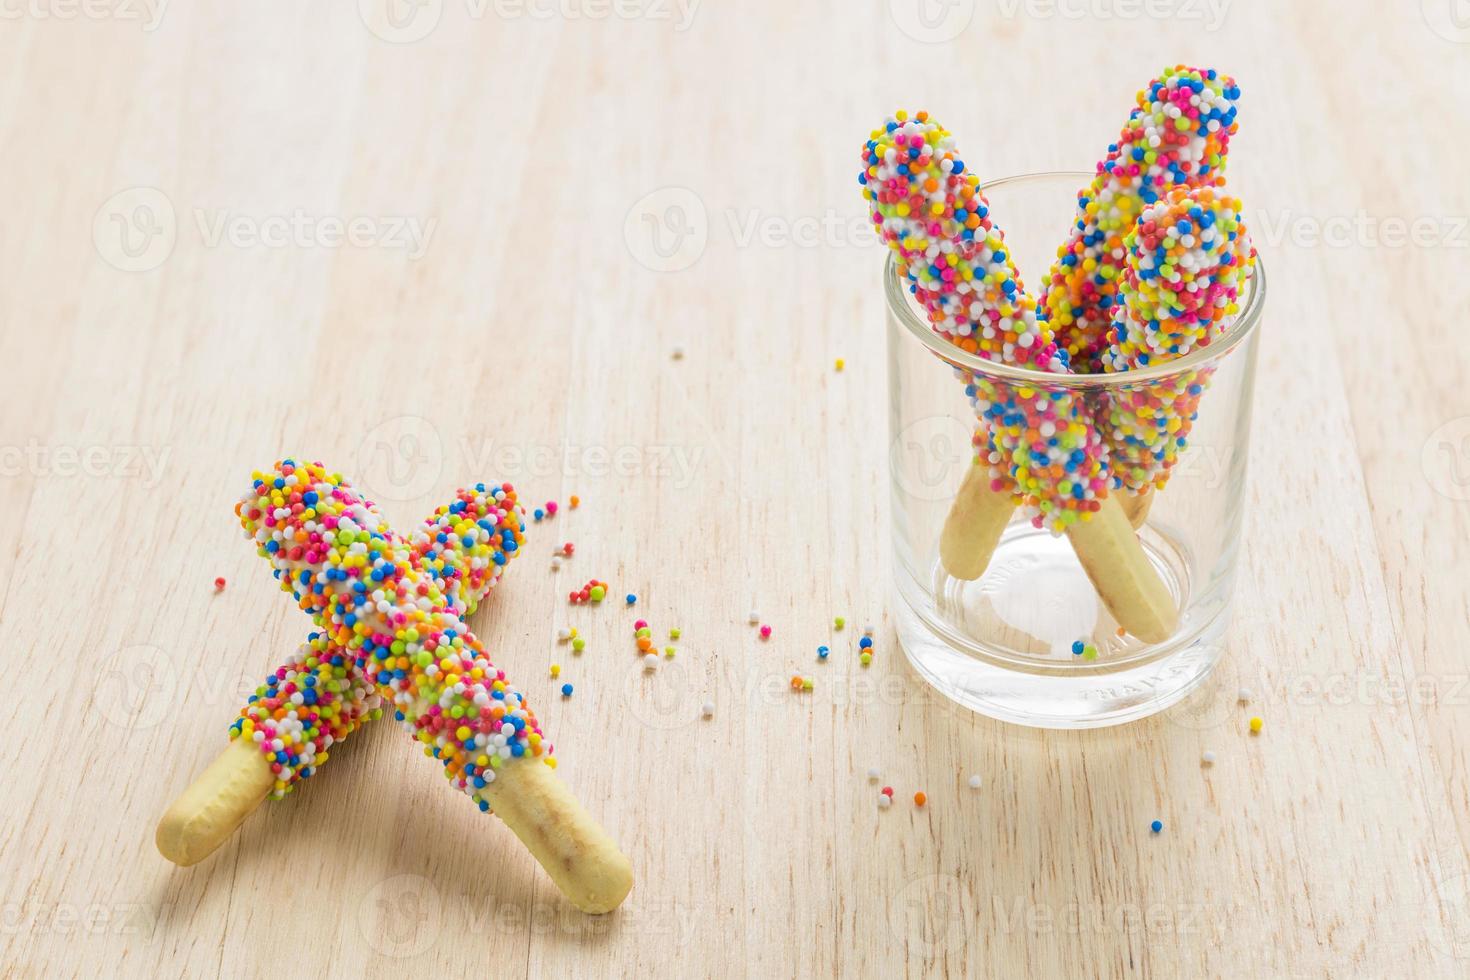 bâtonnets de pain sucré saupoudrés de sucre candi que les enfants adorent. photo